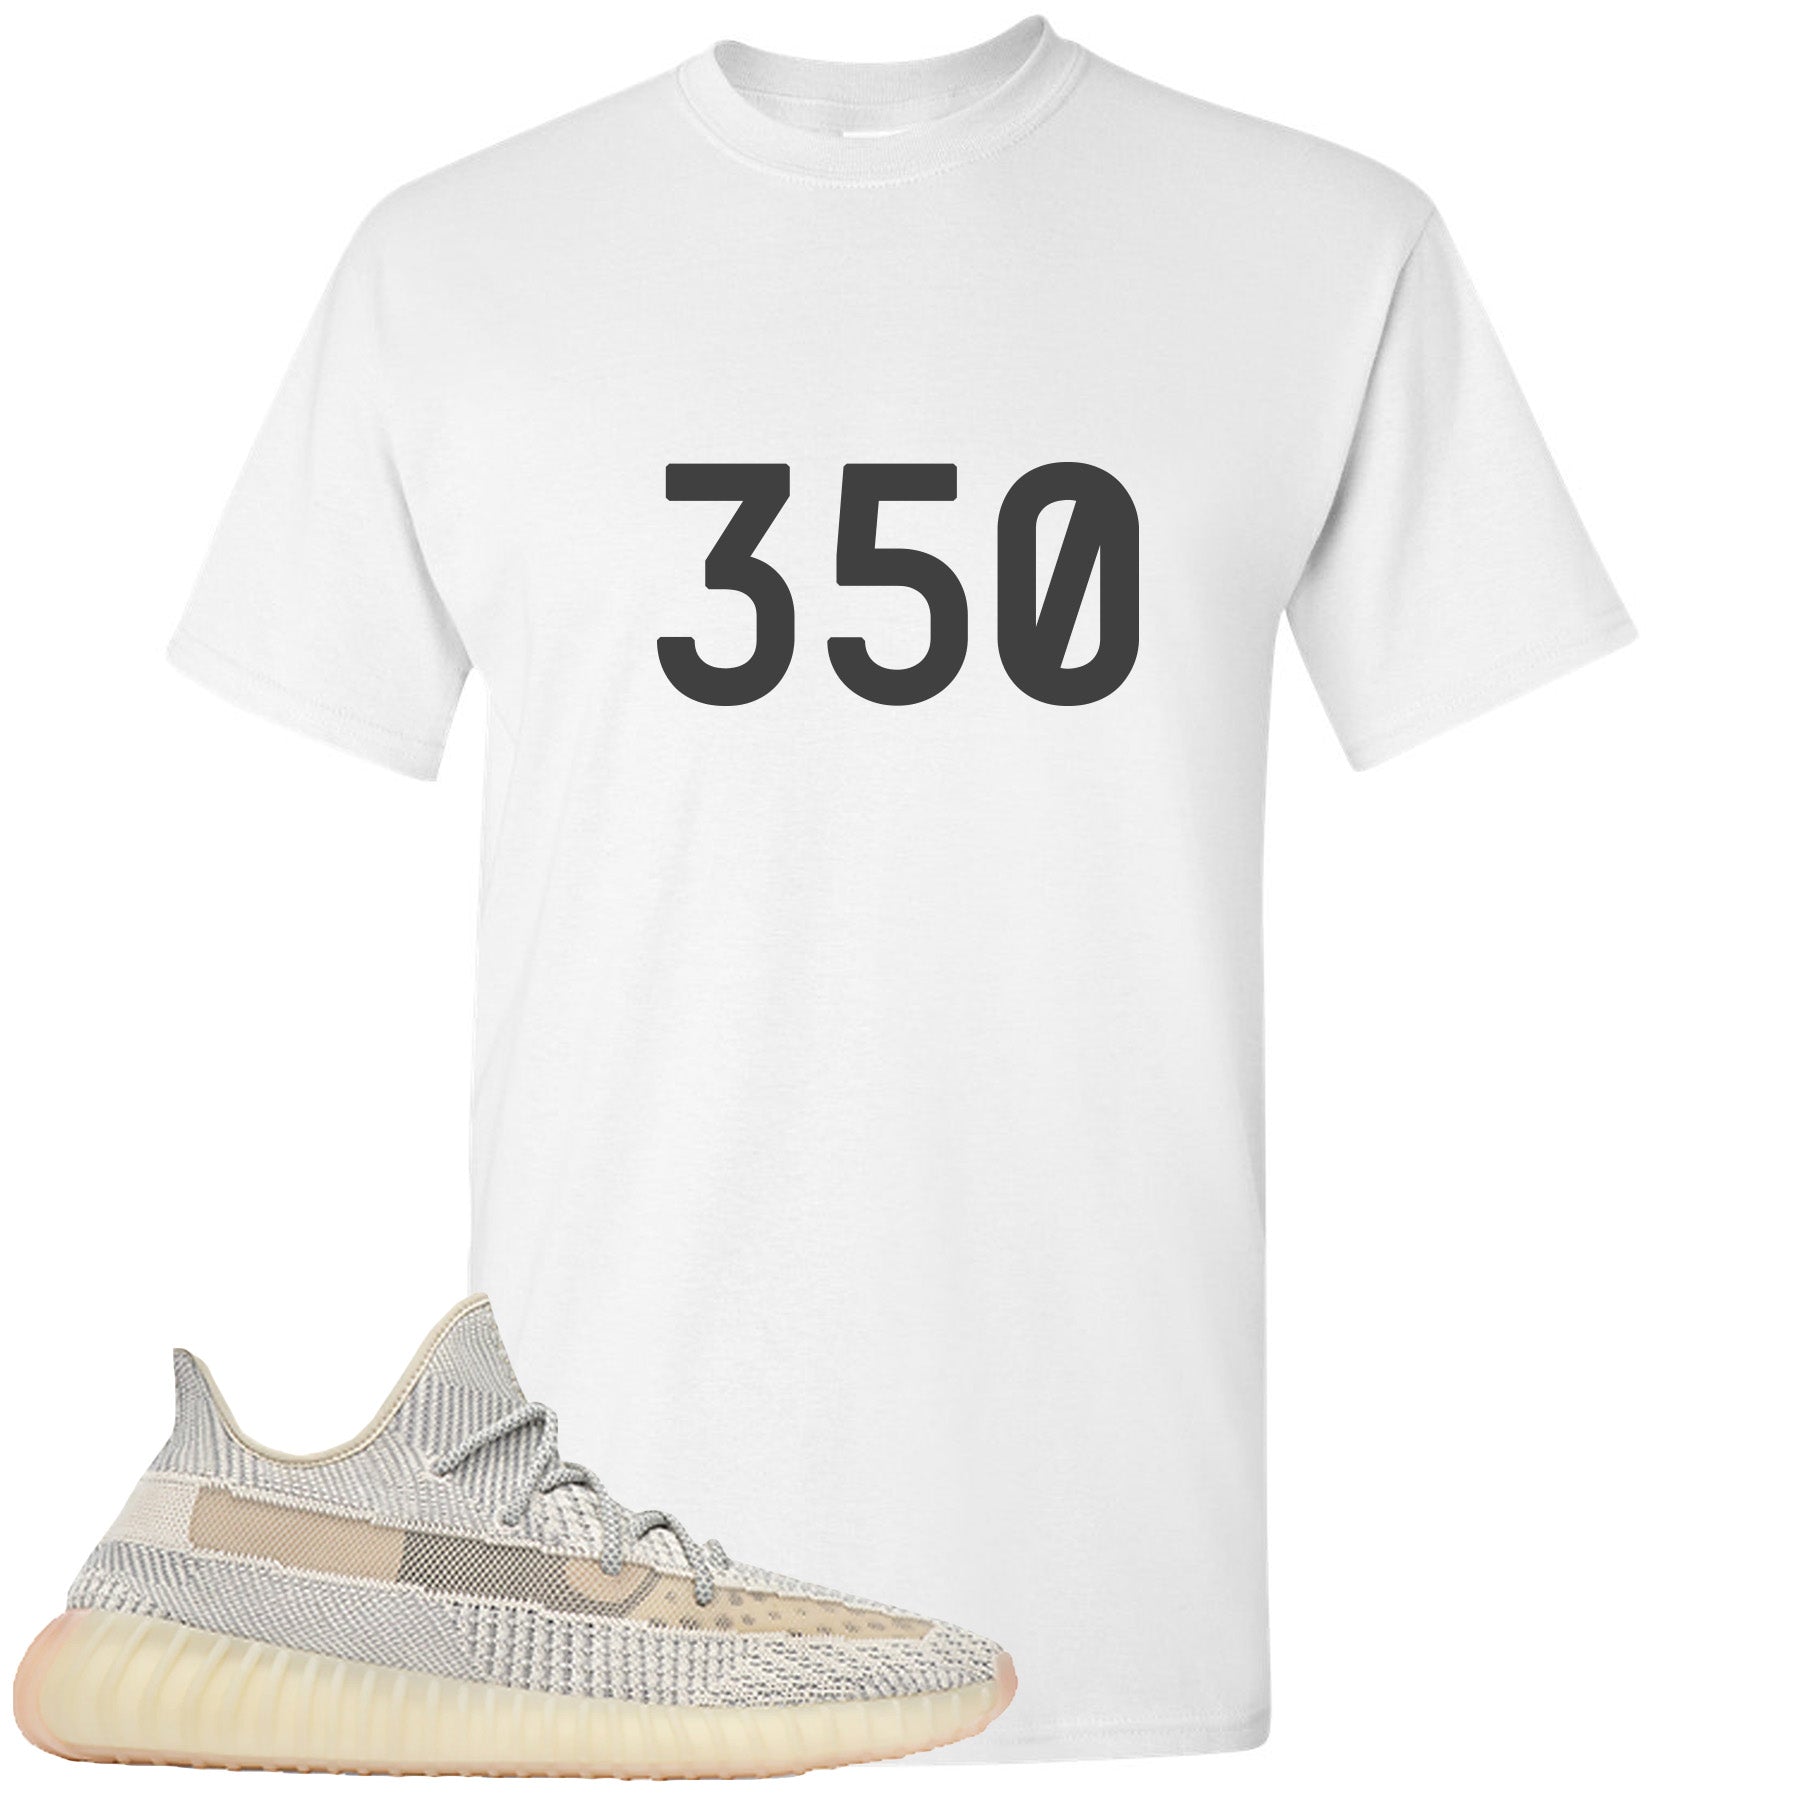 yeezy boost 350 t shirt